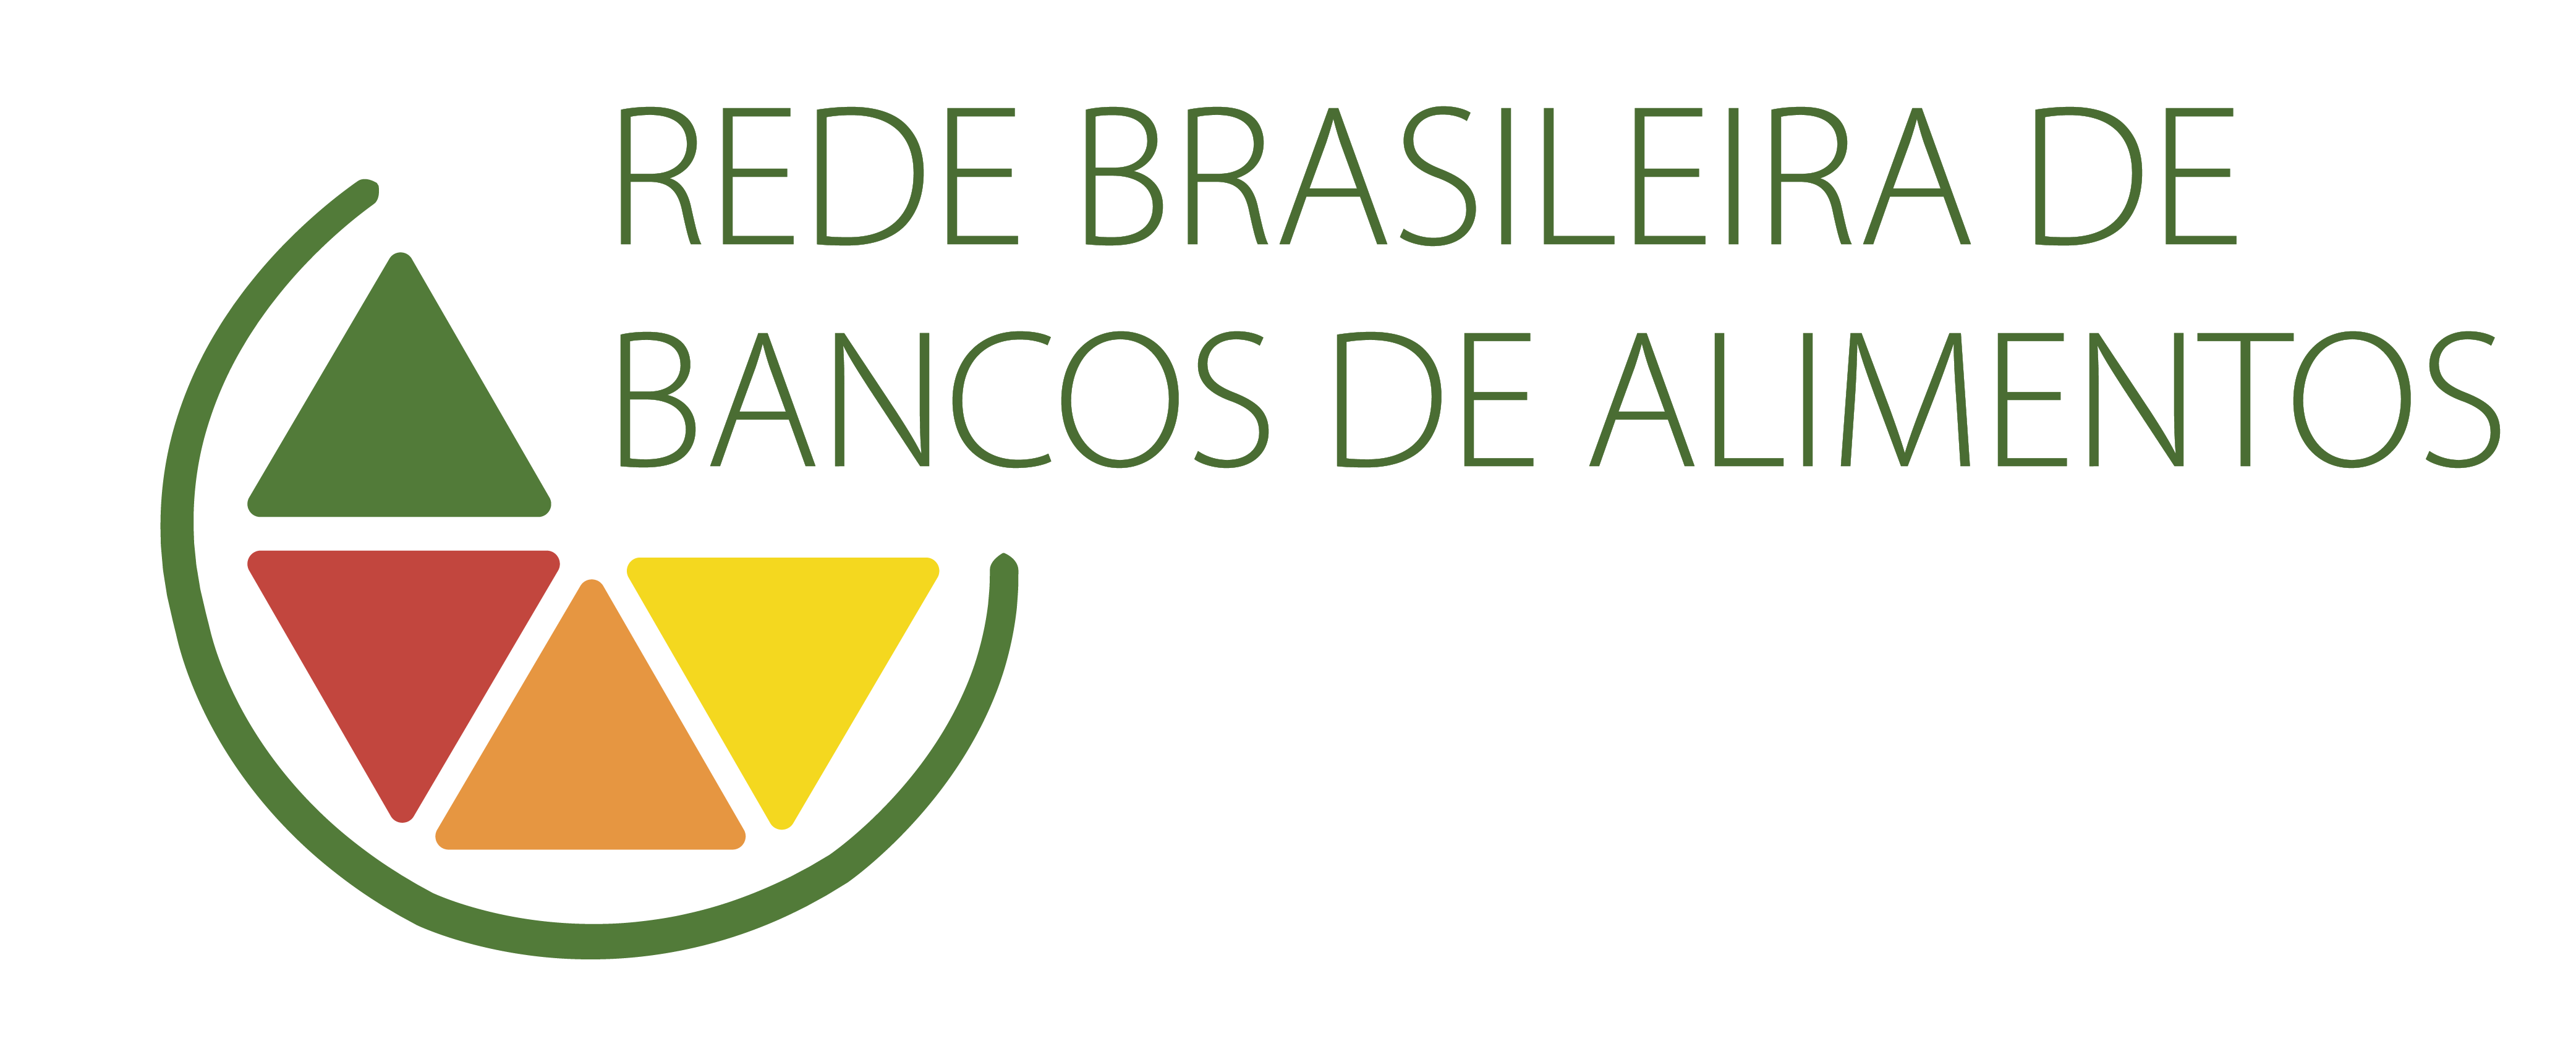 Botão com texto tátil: Rede Brasileira de banco de dados - Clique para interagir